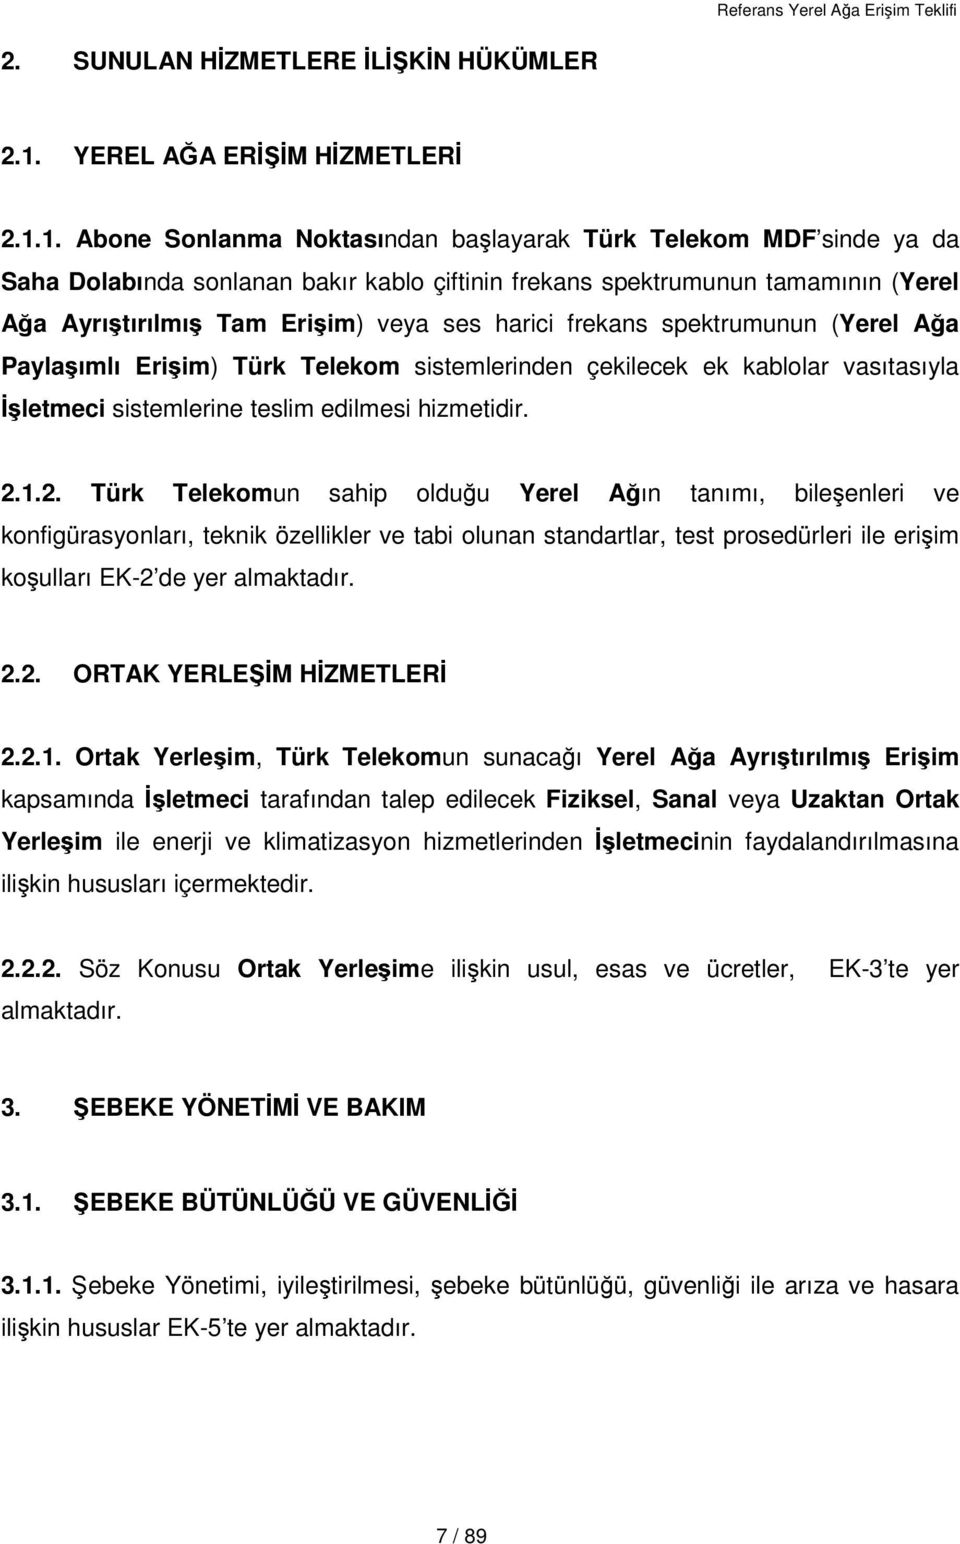 1. Abone Sonlanma Noktasından başlayarak Türk Telekom MDF sinde ya da Saha Dolabında sonlanan bakır kablo çiftinin frekans spektrumunun tamamının (Yerel Ağa Ayrıştırılmış Tam Erişim) veya ses harici